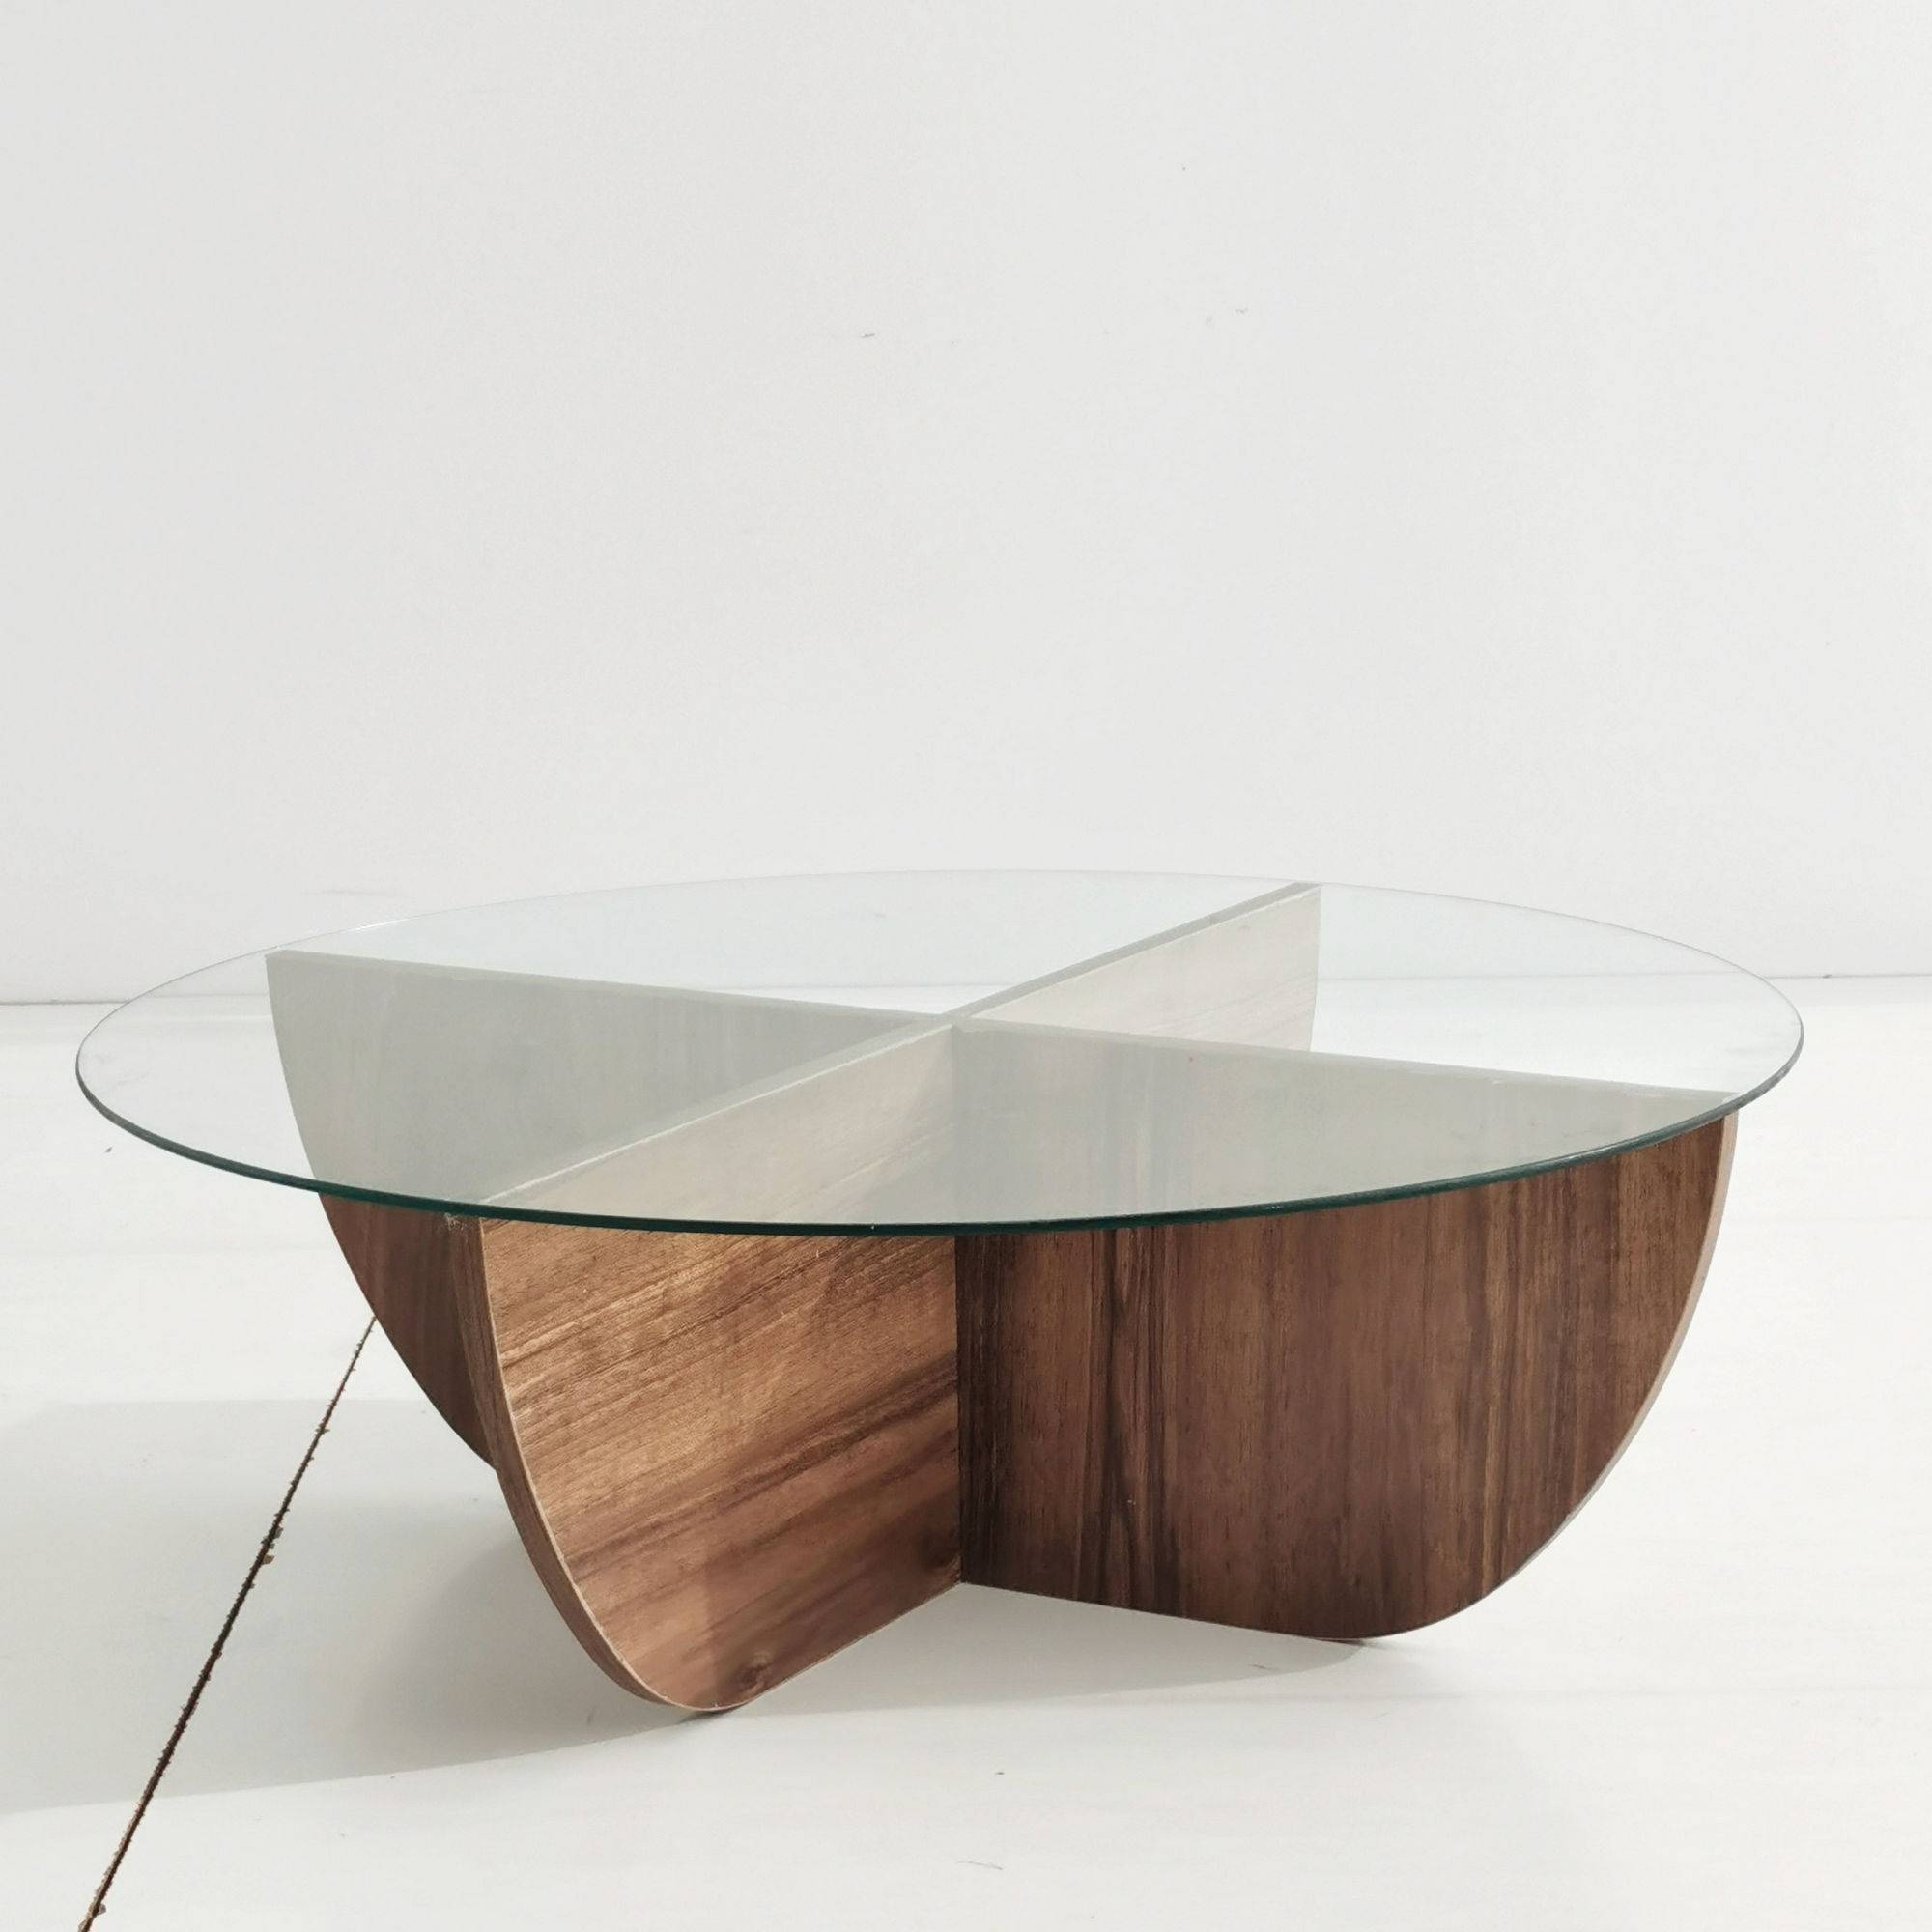 Table basse design Sunac D90cm Verre Transparent et Bois foncé